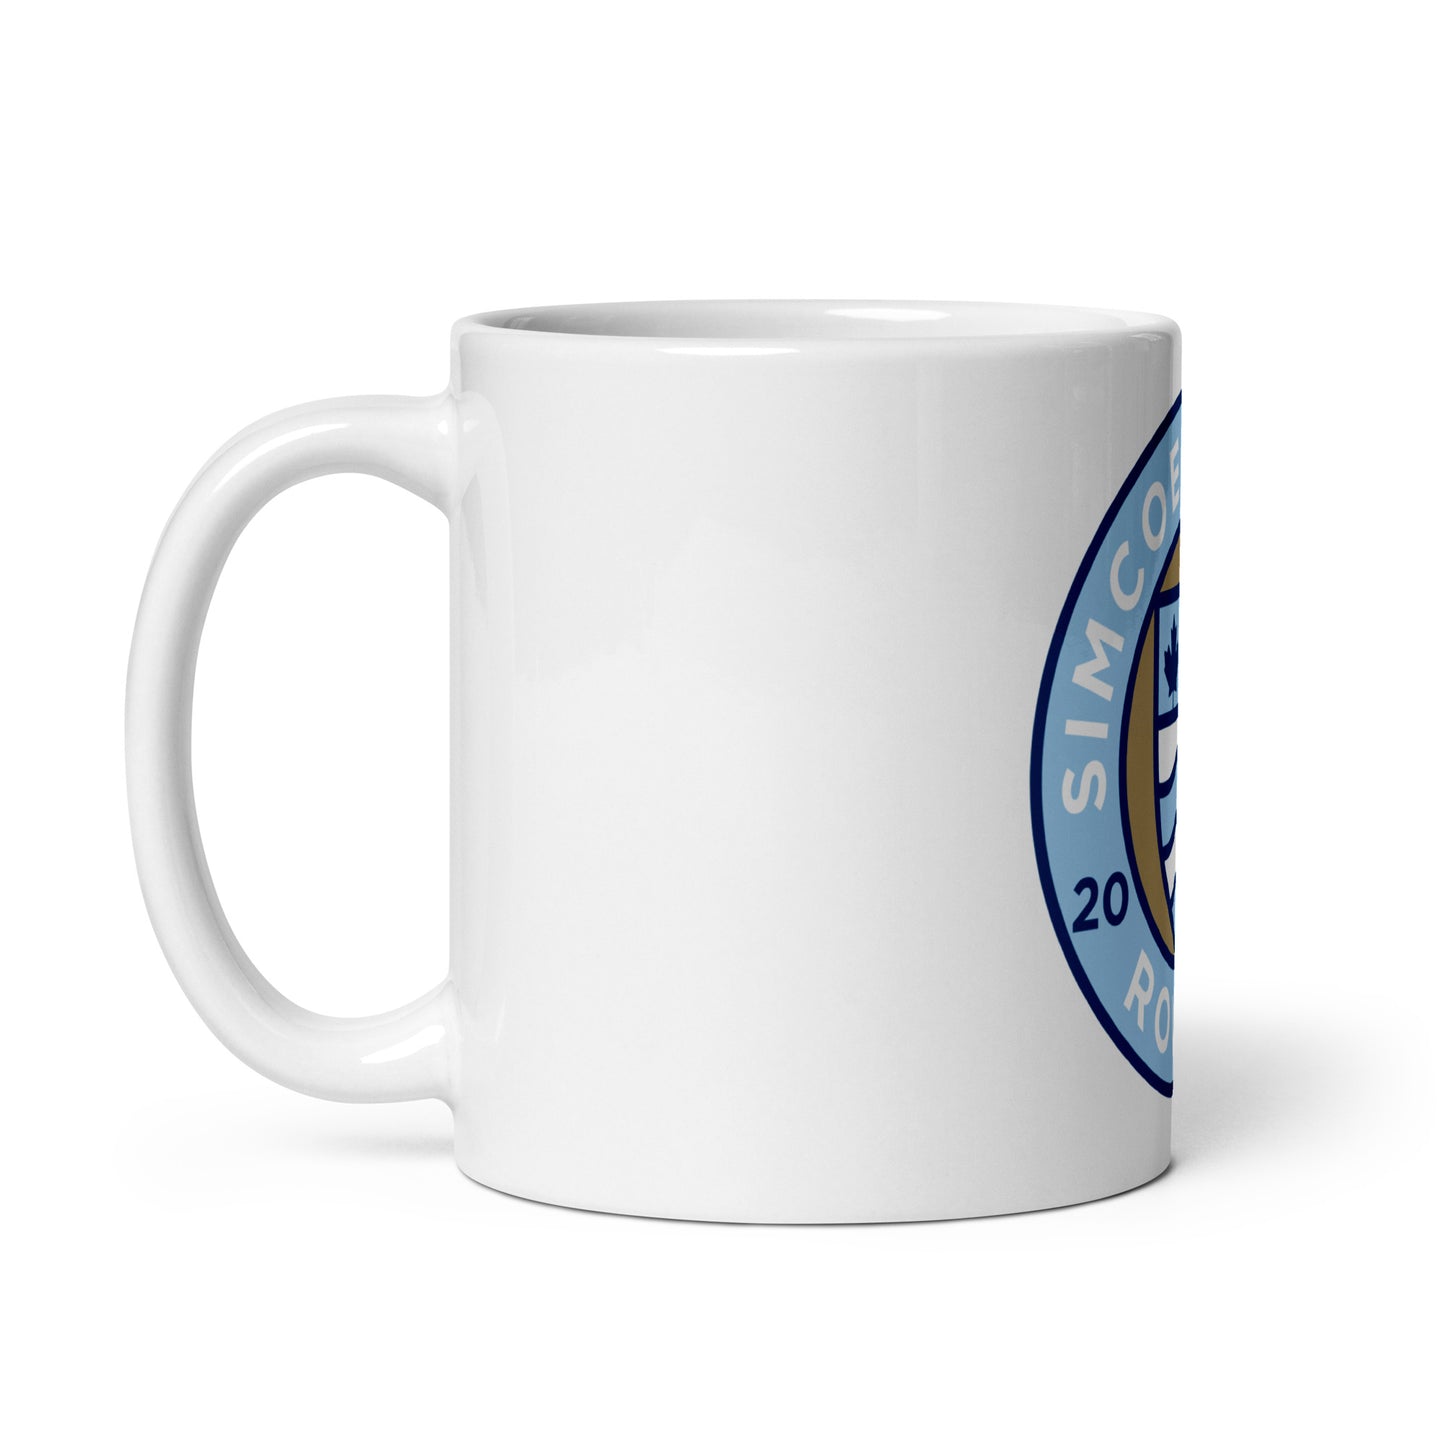 Rovers Morning Mug